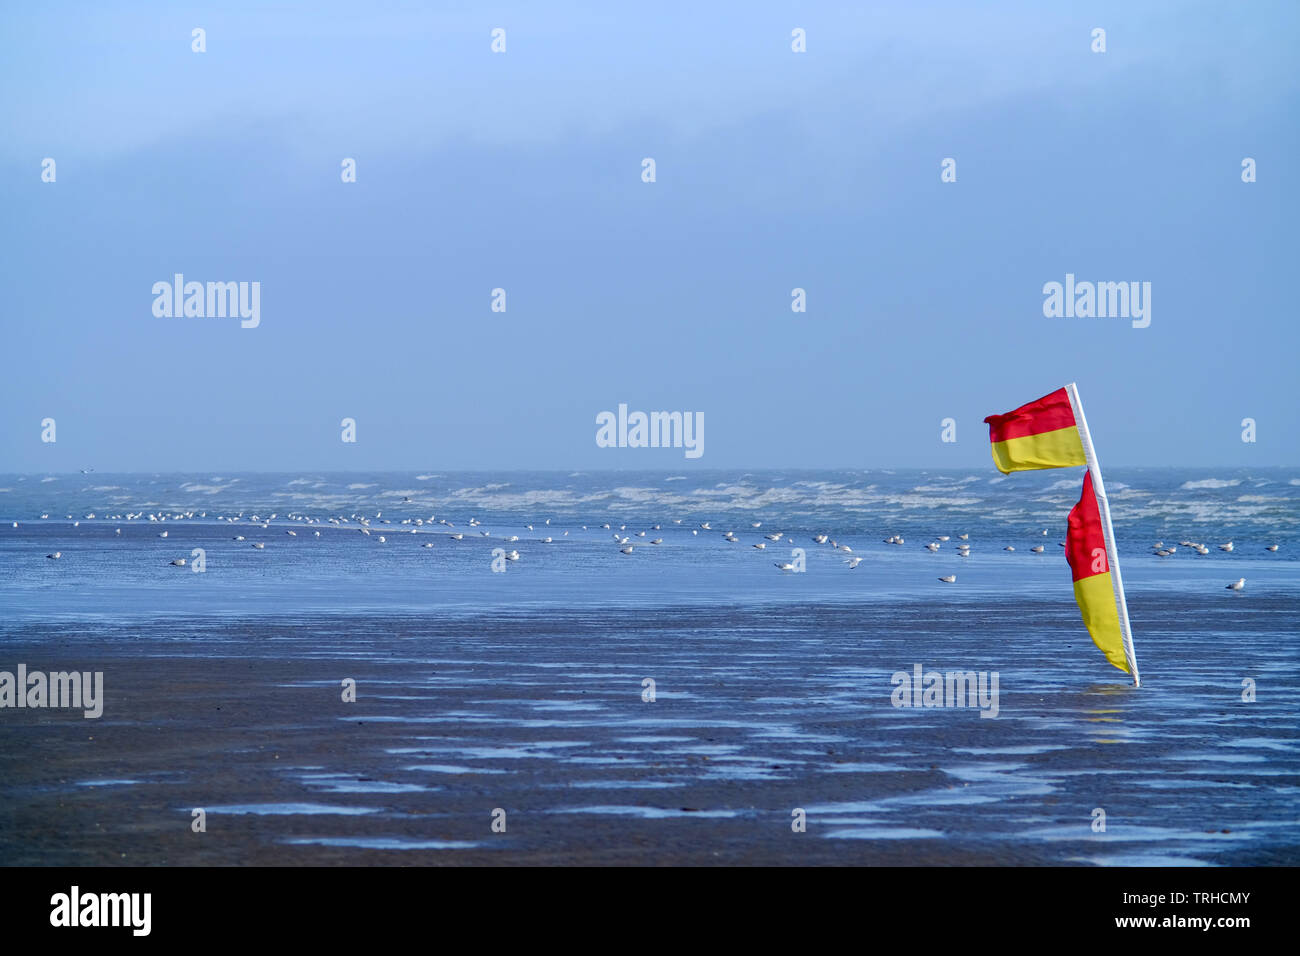 Le rouge et jaune echelle les drapeaux sur la plage à Camber Sands dénotant la présence de sauveteur et l'endroit sûr pour nager. Banque D'Images